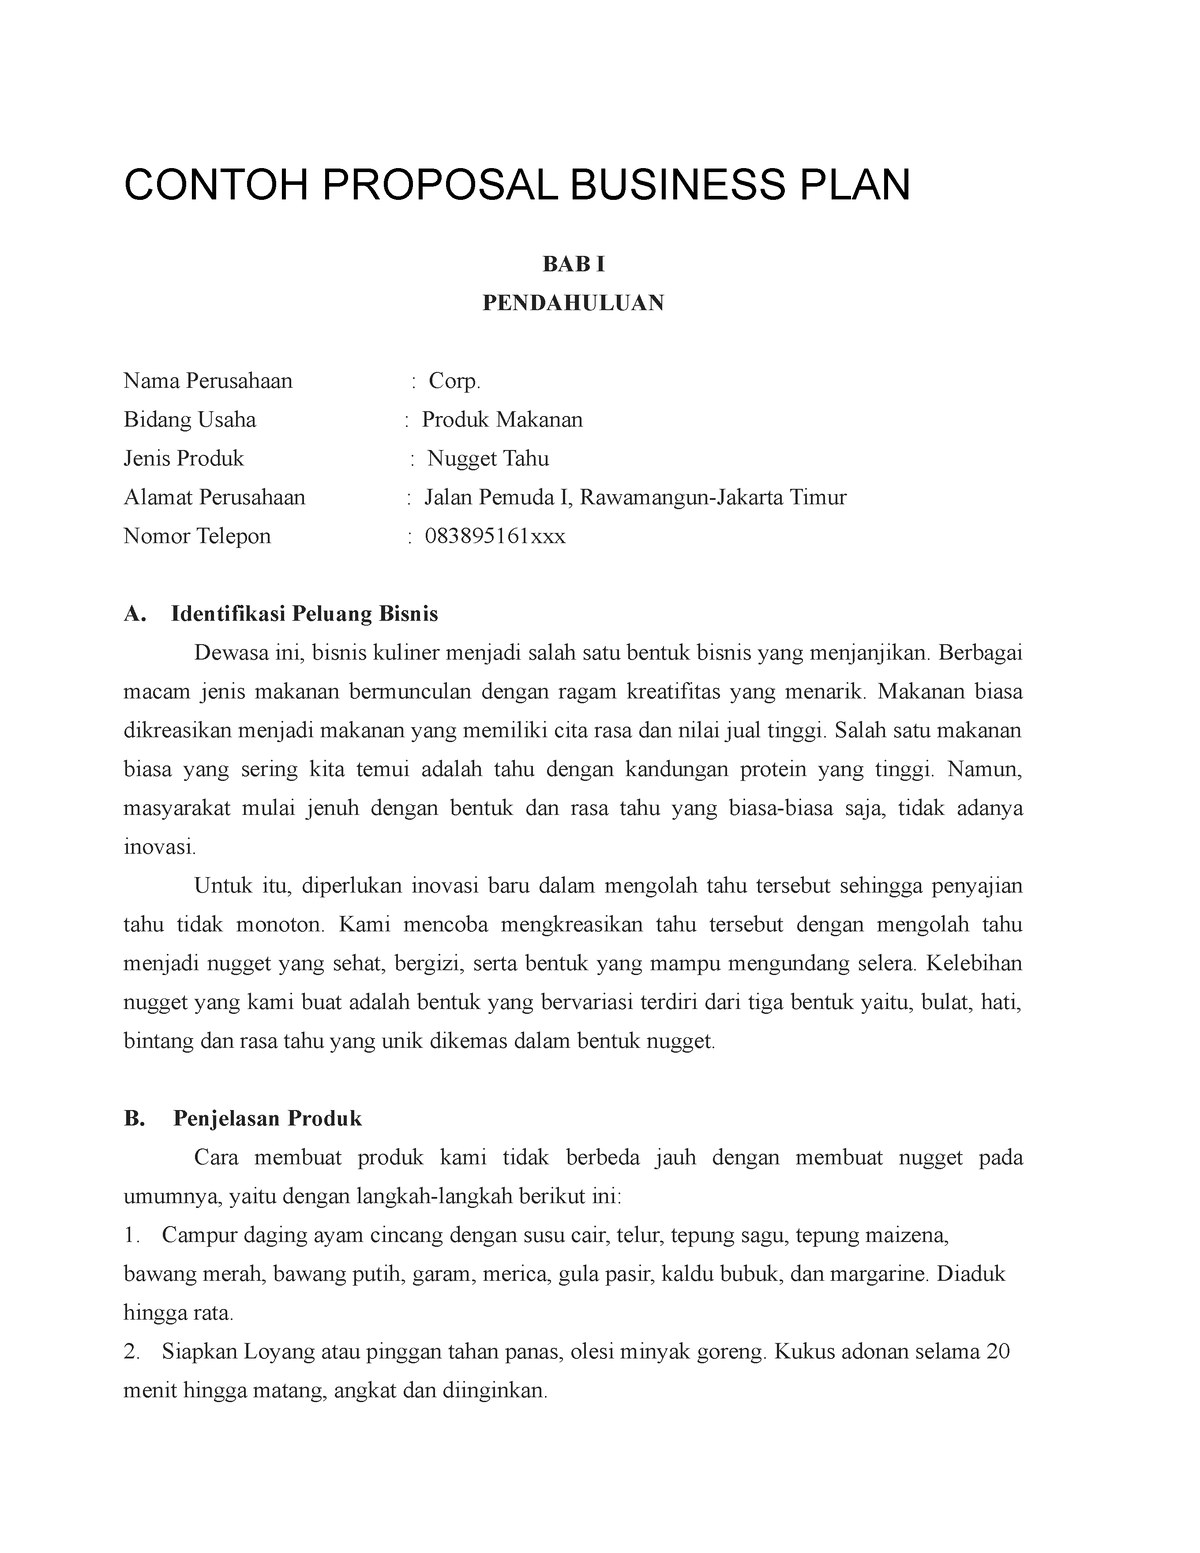 contoh business plan frozen food pdf